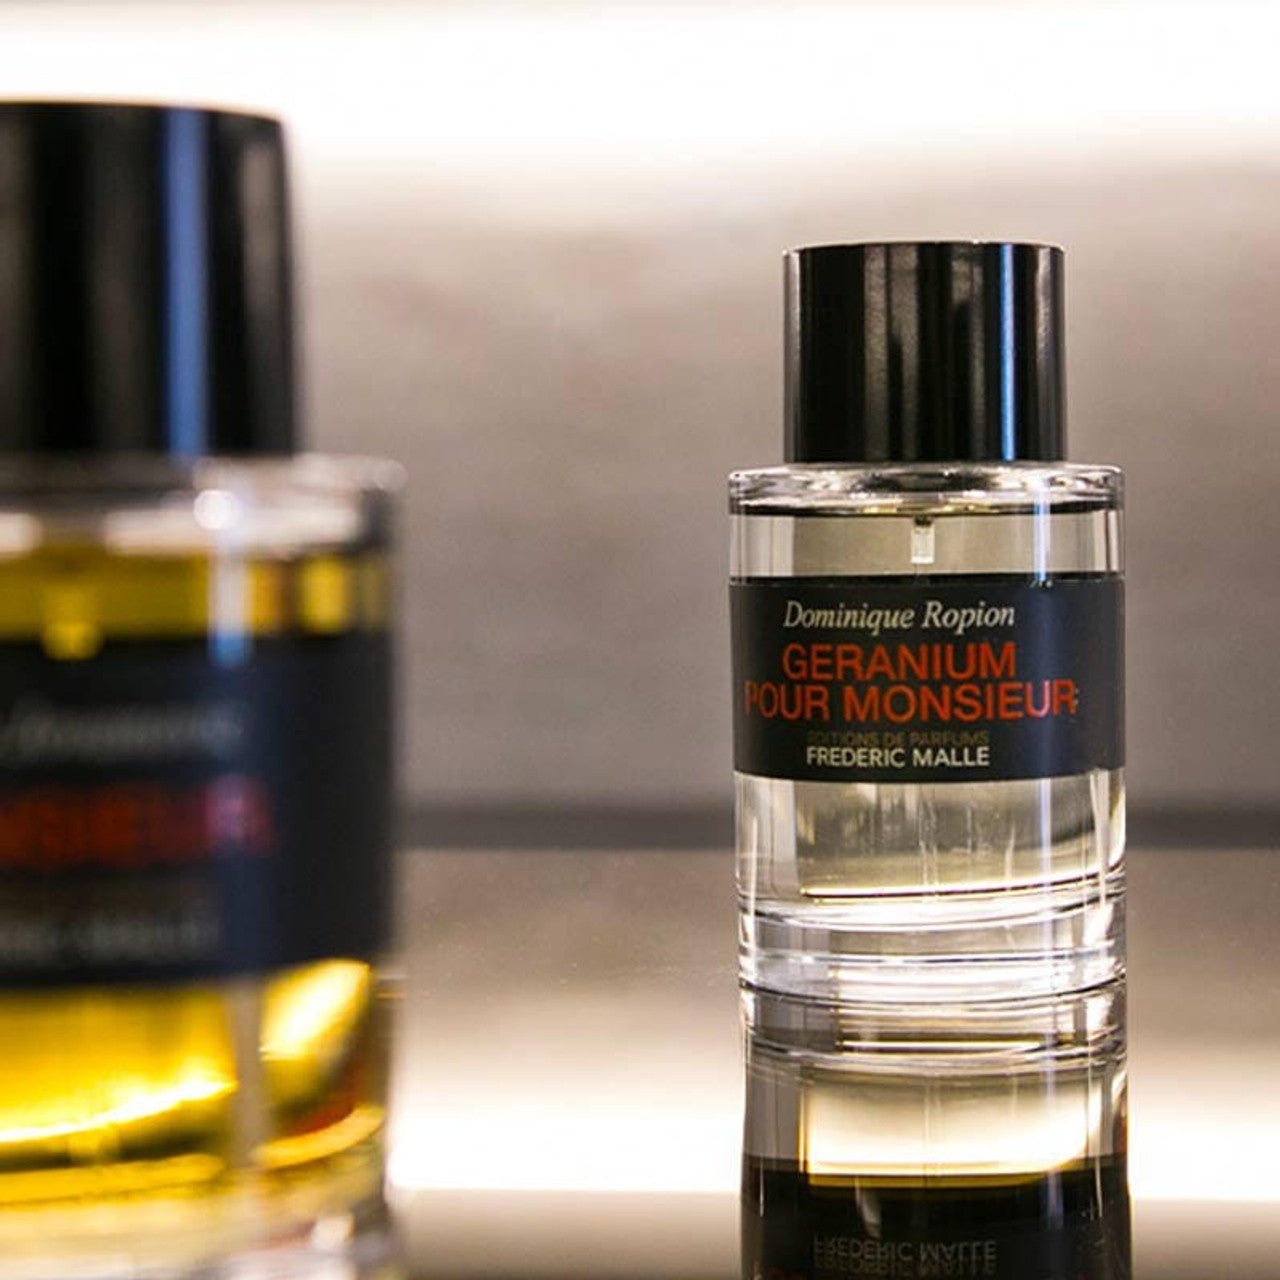 Frederic Malle Geranium Pour Monsieur EDP | My Perfume Shop Australia